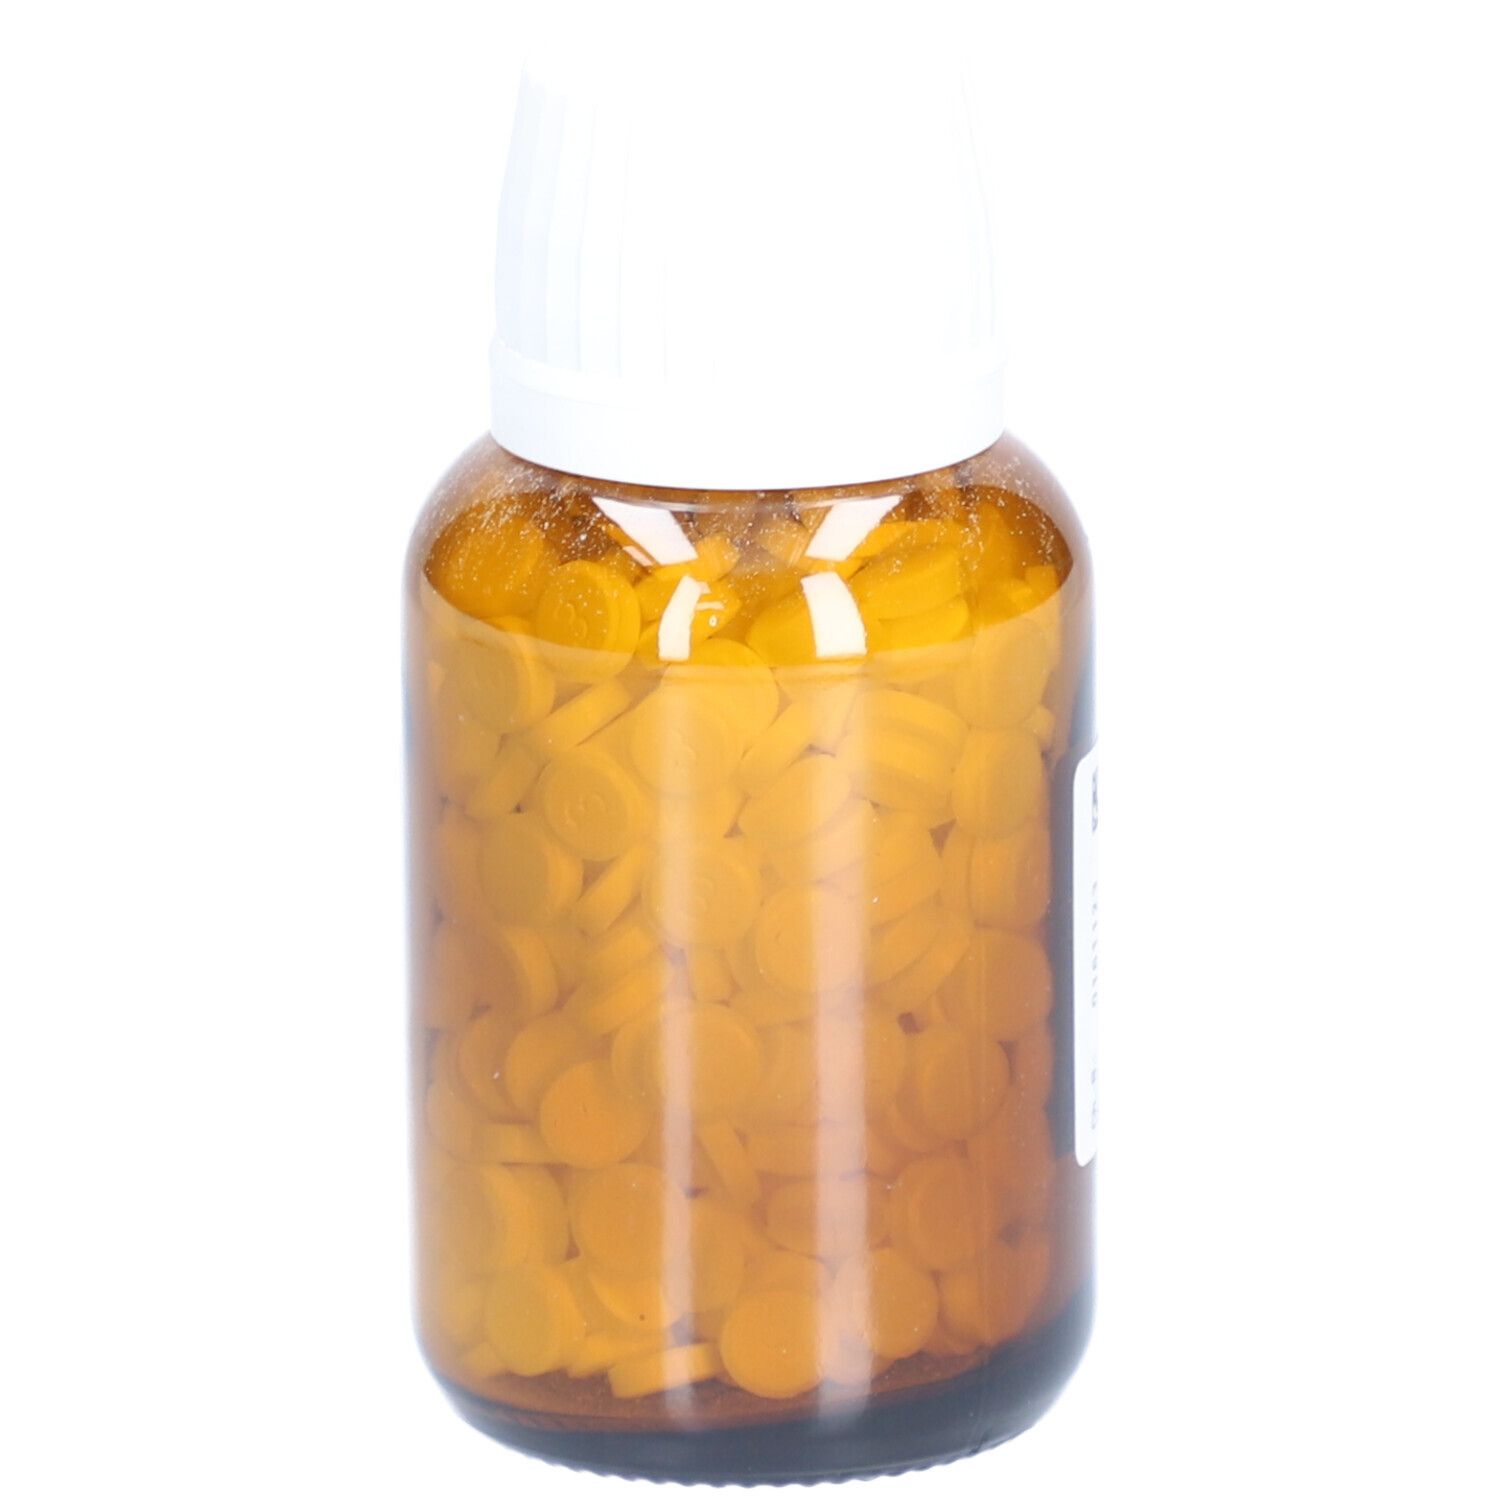 DHU Schüßler-Salz Nr. 3® Ferrum phosphoricum D6